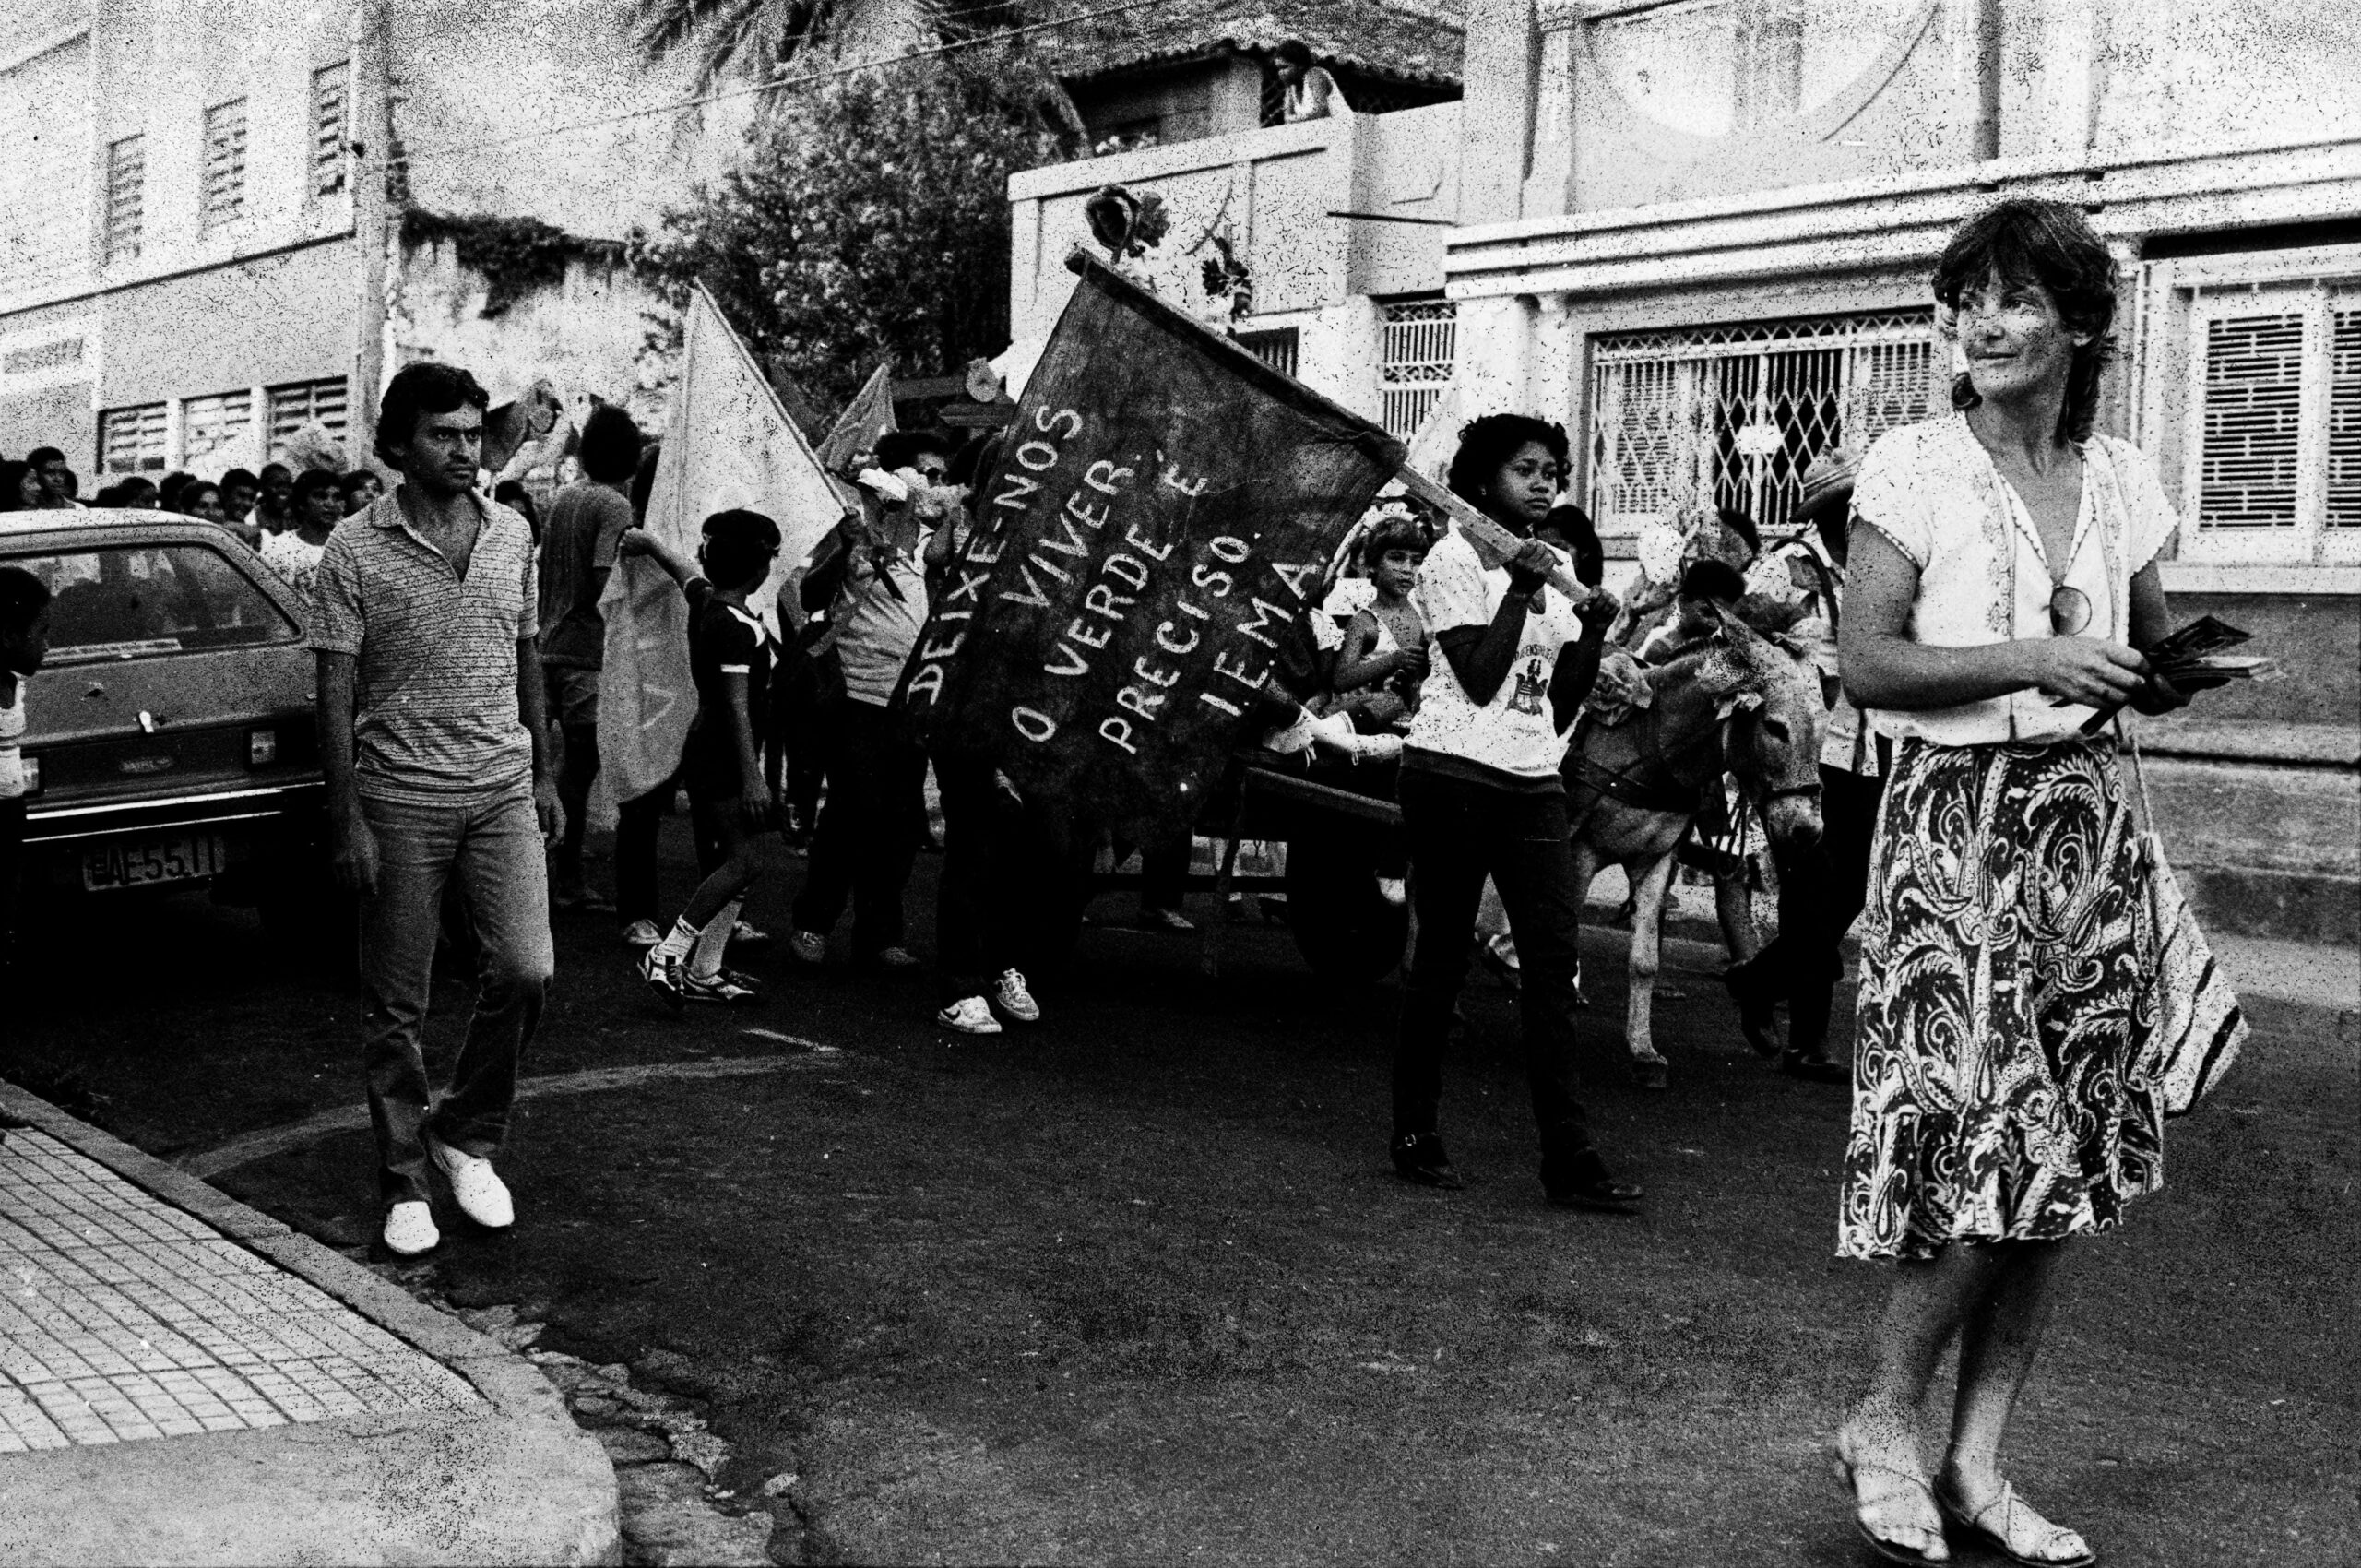 Imagem preto e branca de uma manifestação. Diversas pessoas caminham em uma rua segurando bandeiras. À frente está uma mulher.